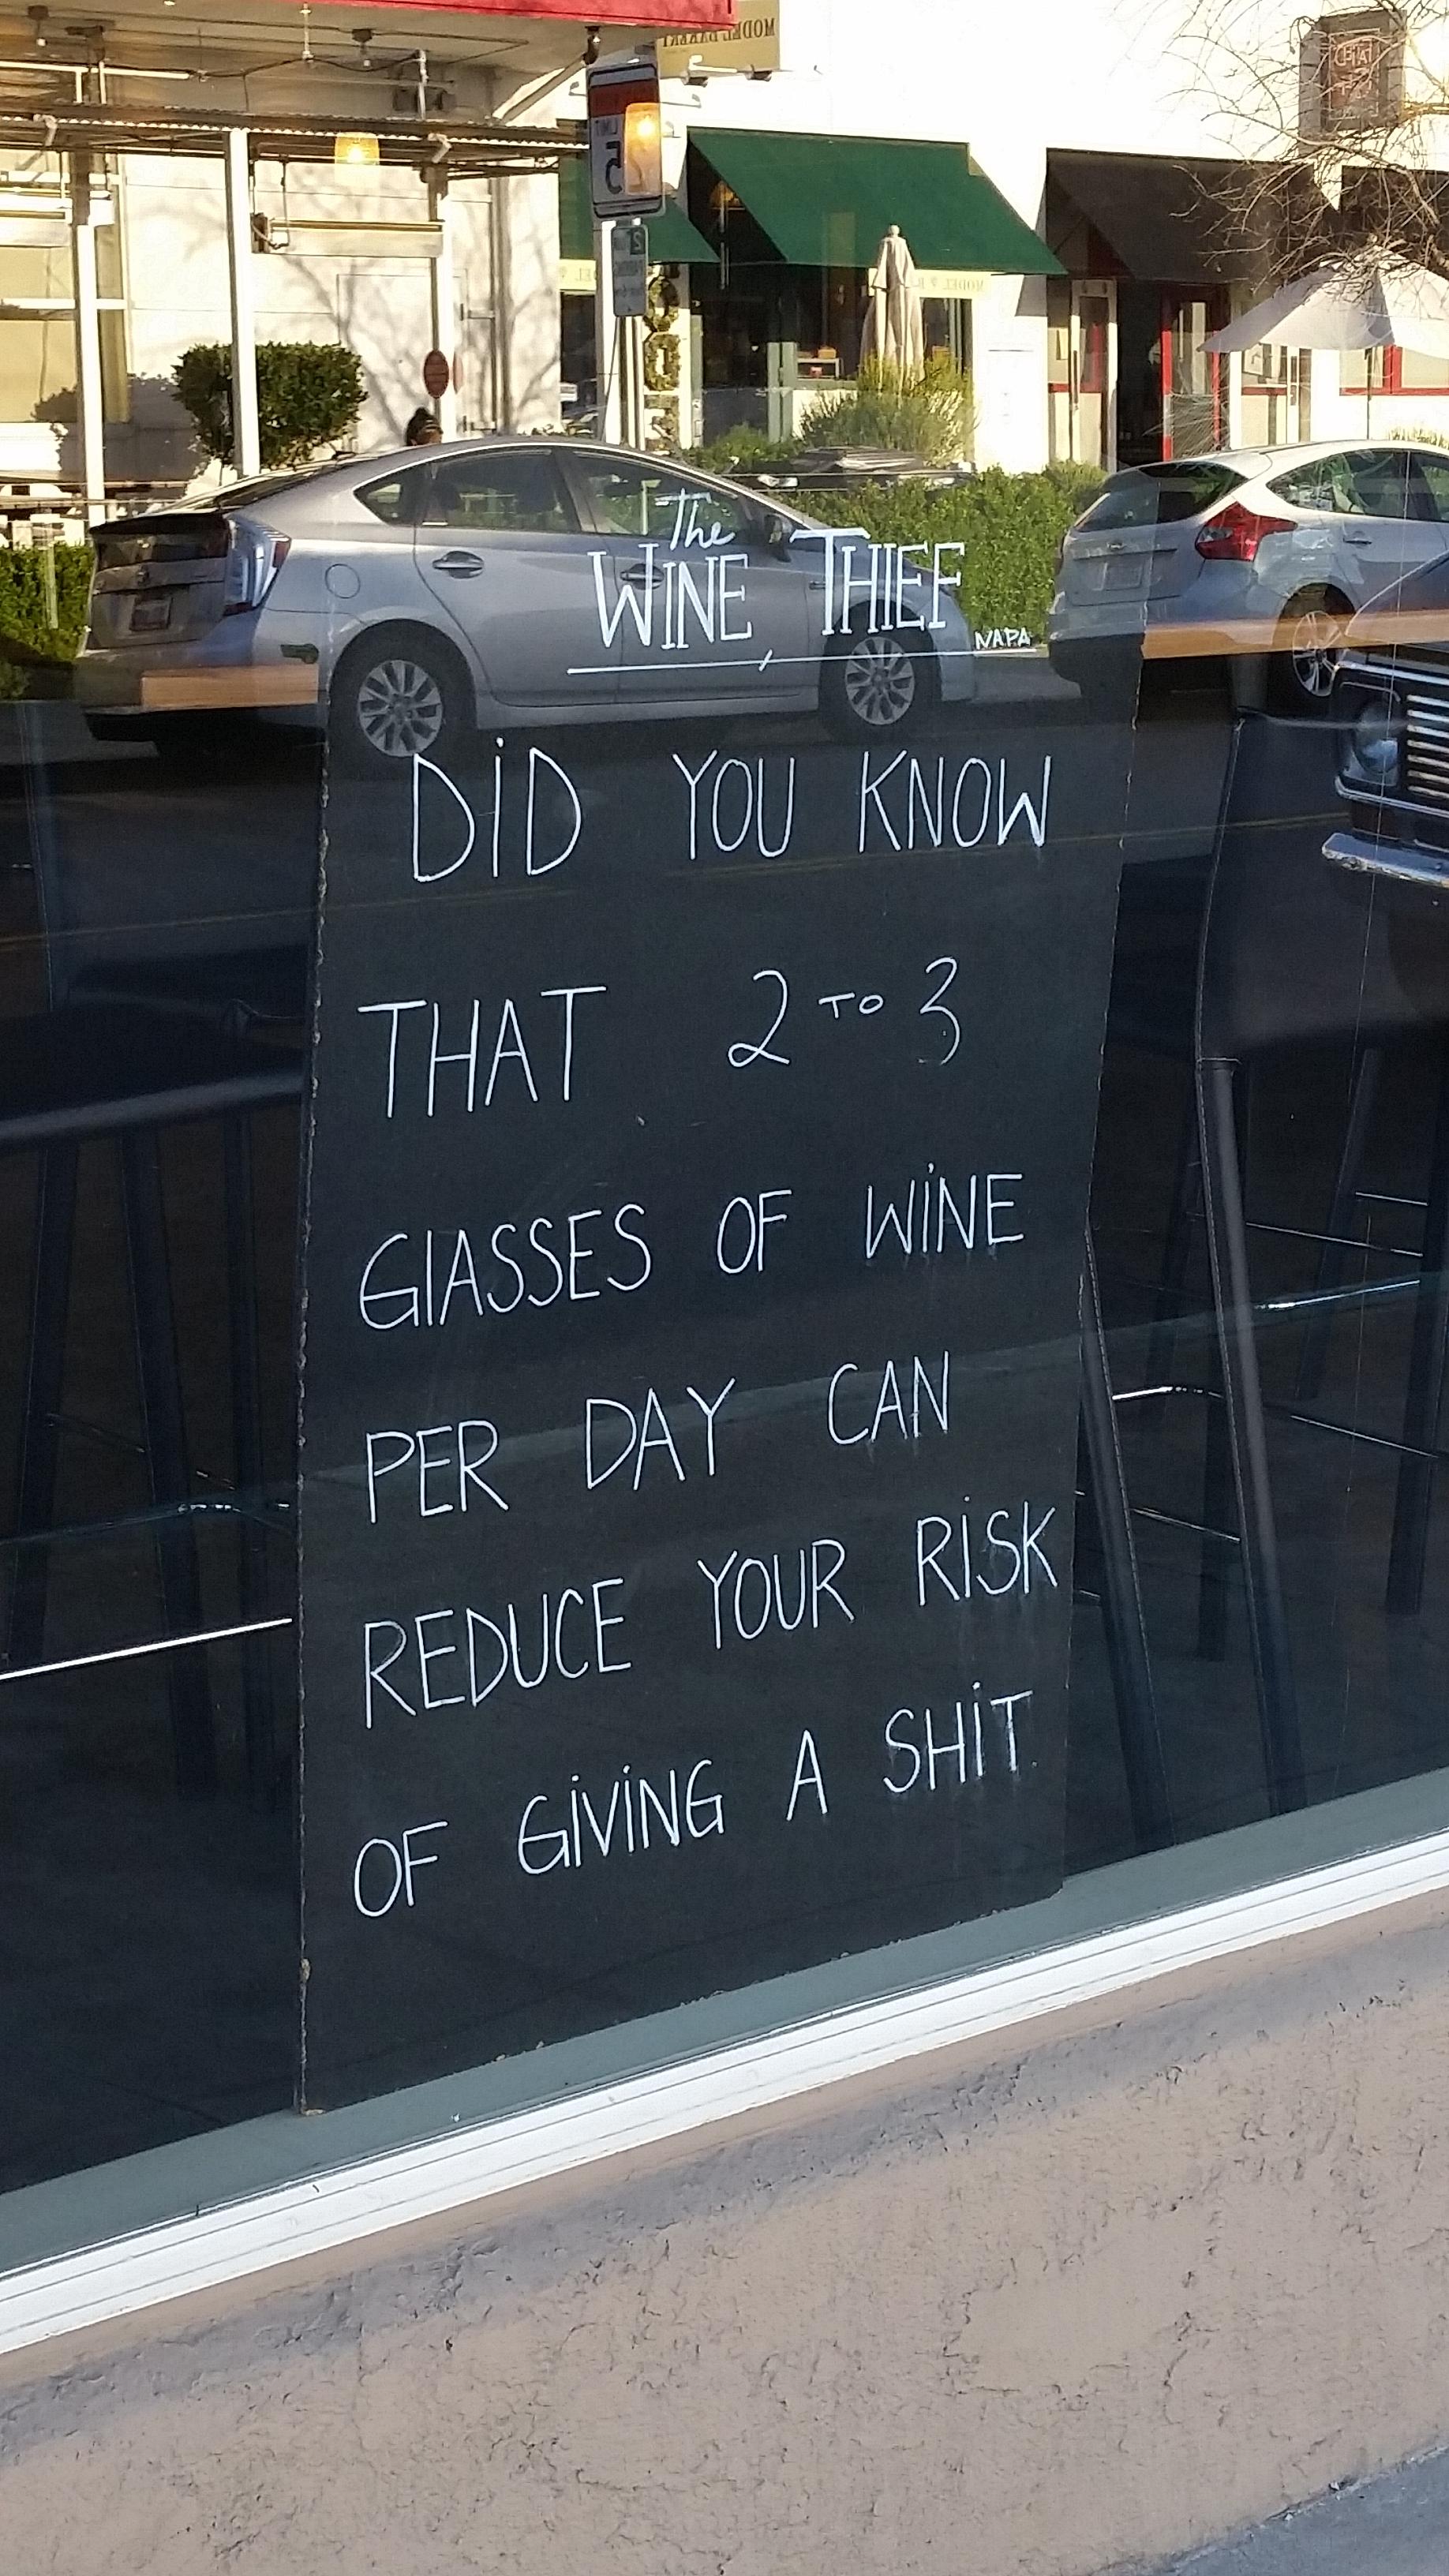 Drink wine, it’s healthy!